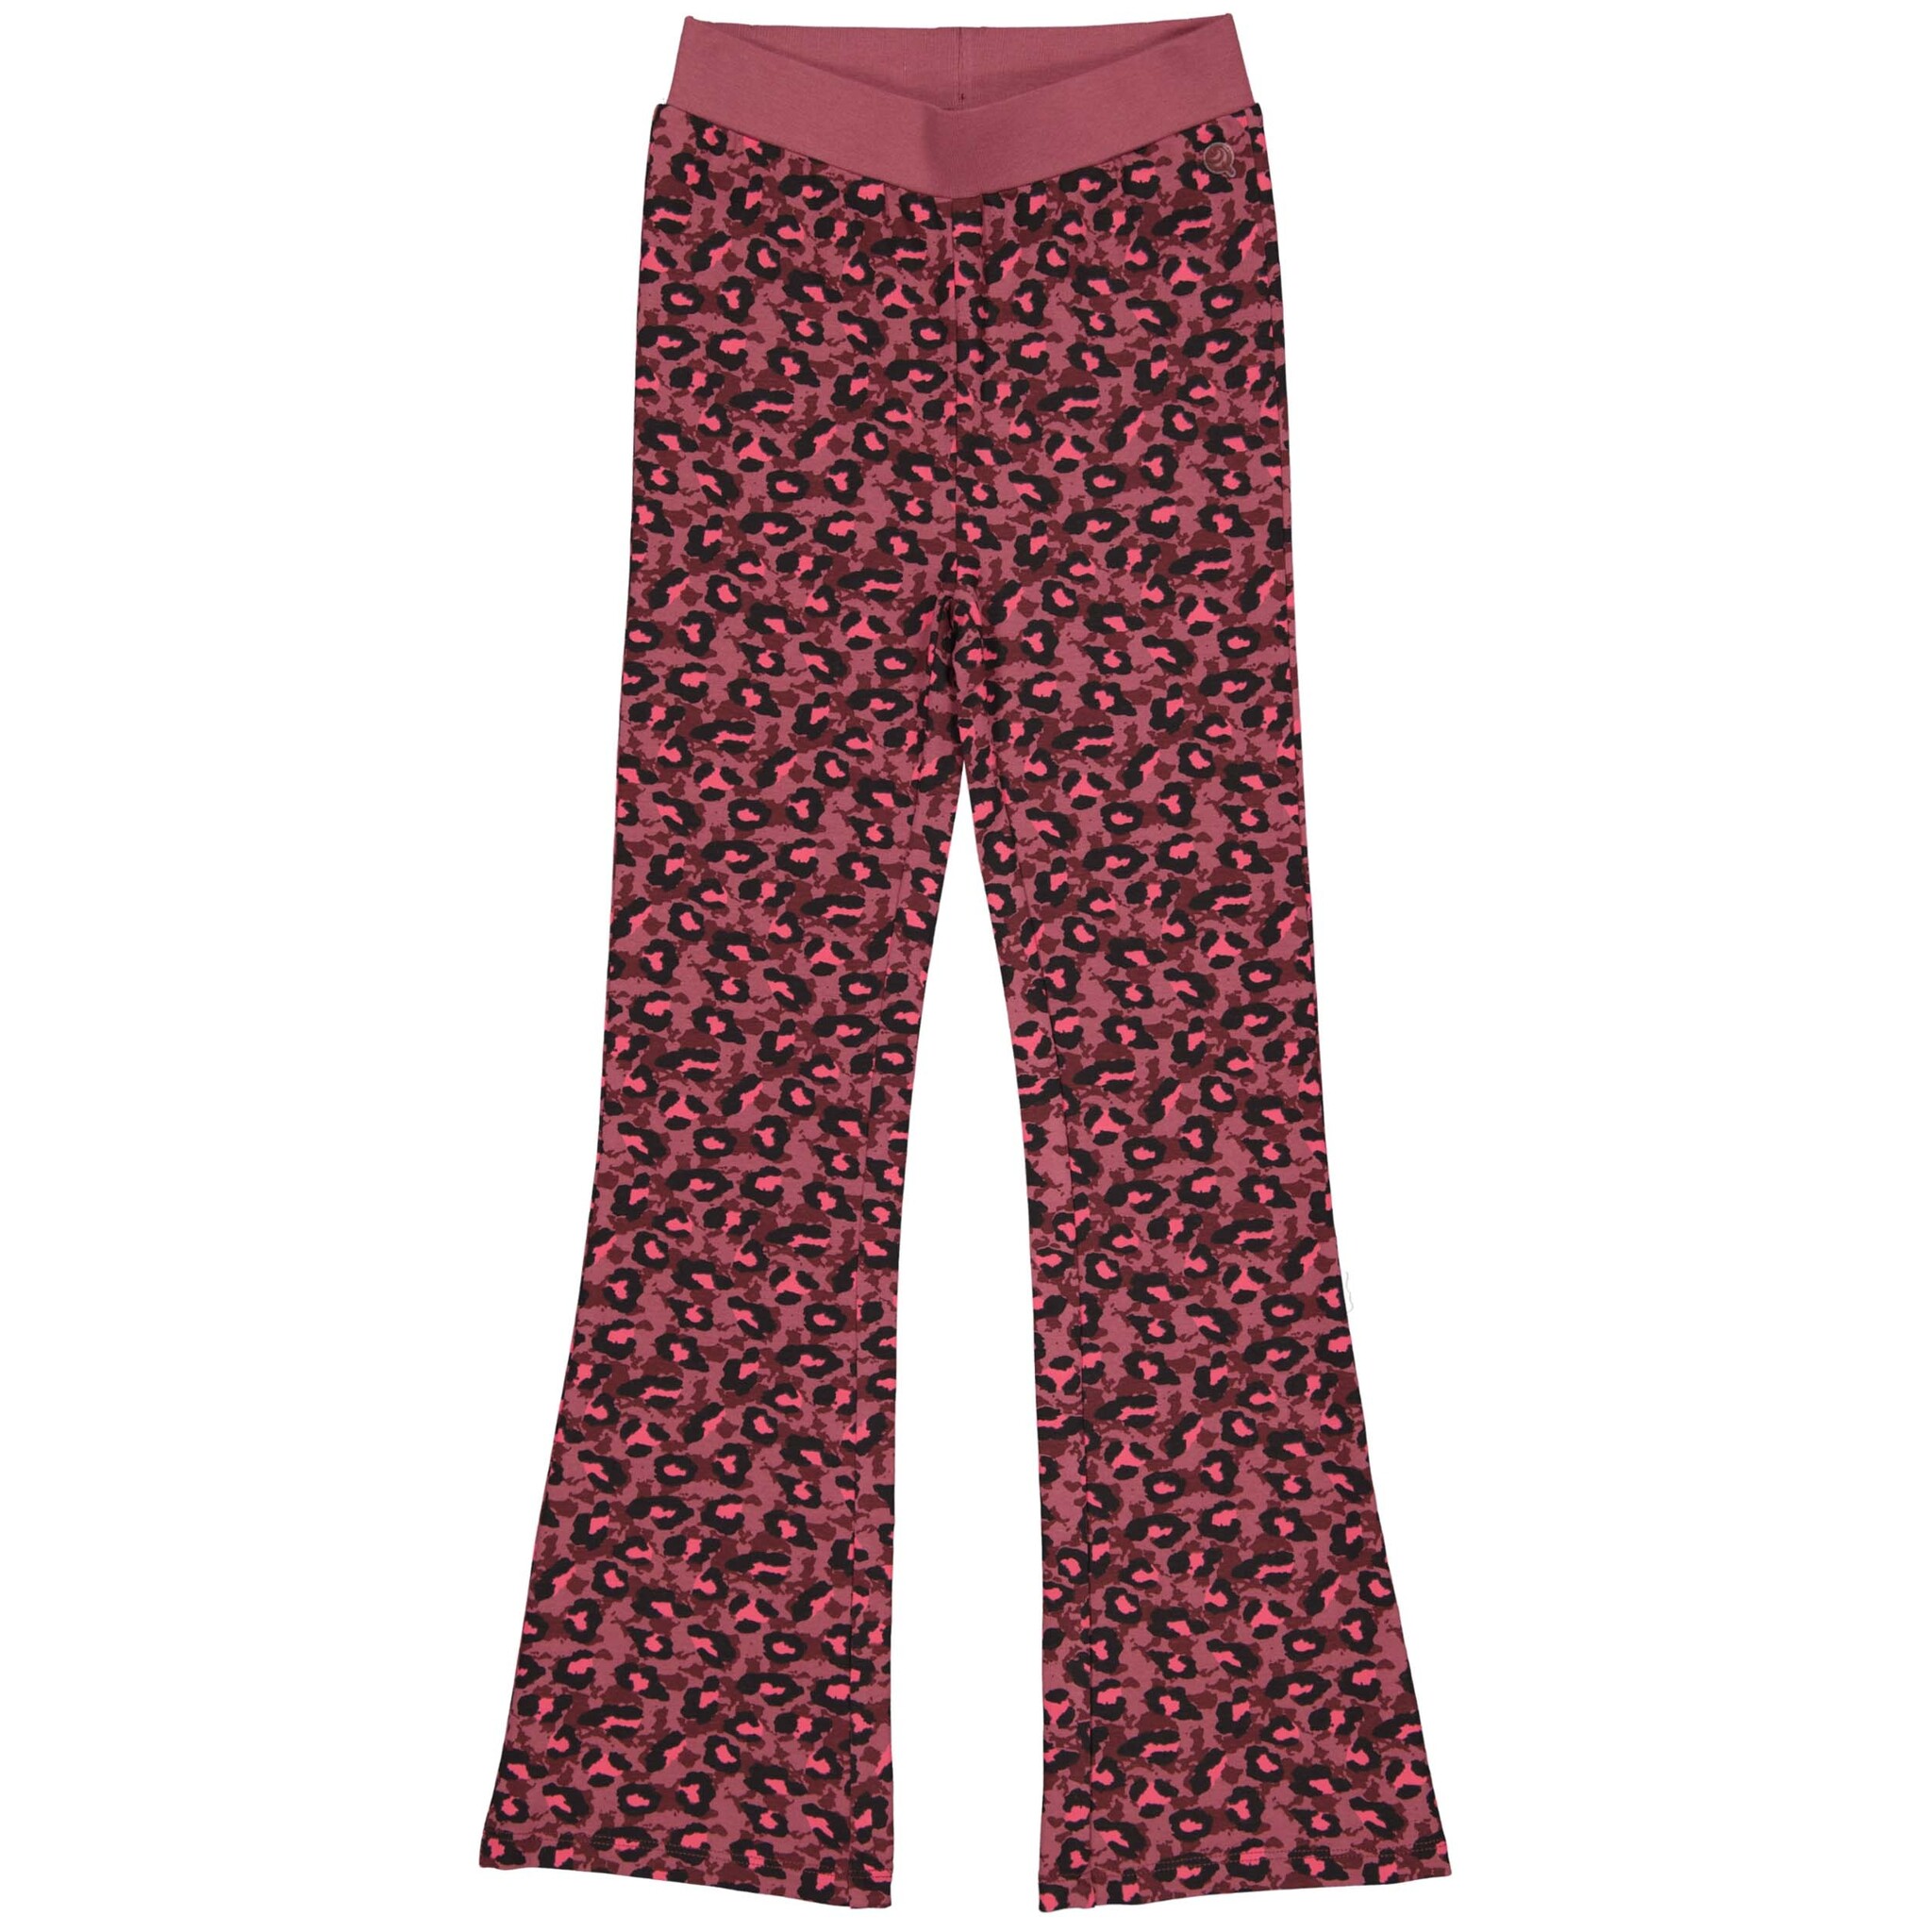 Quapi Meisjes flairbroek - Aymee - AOP luipaard roze